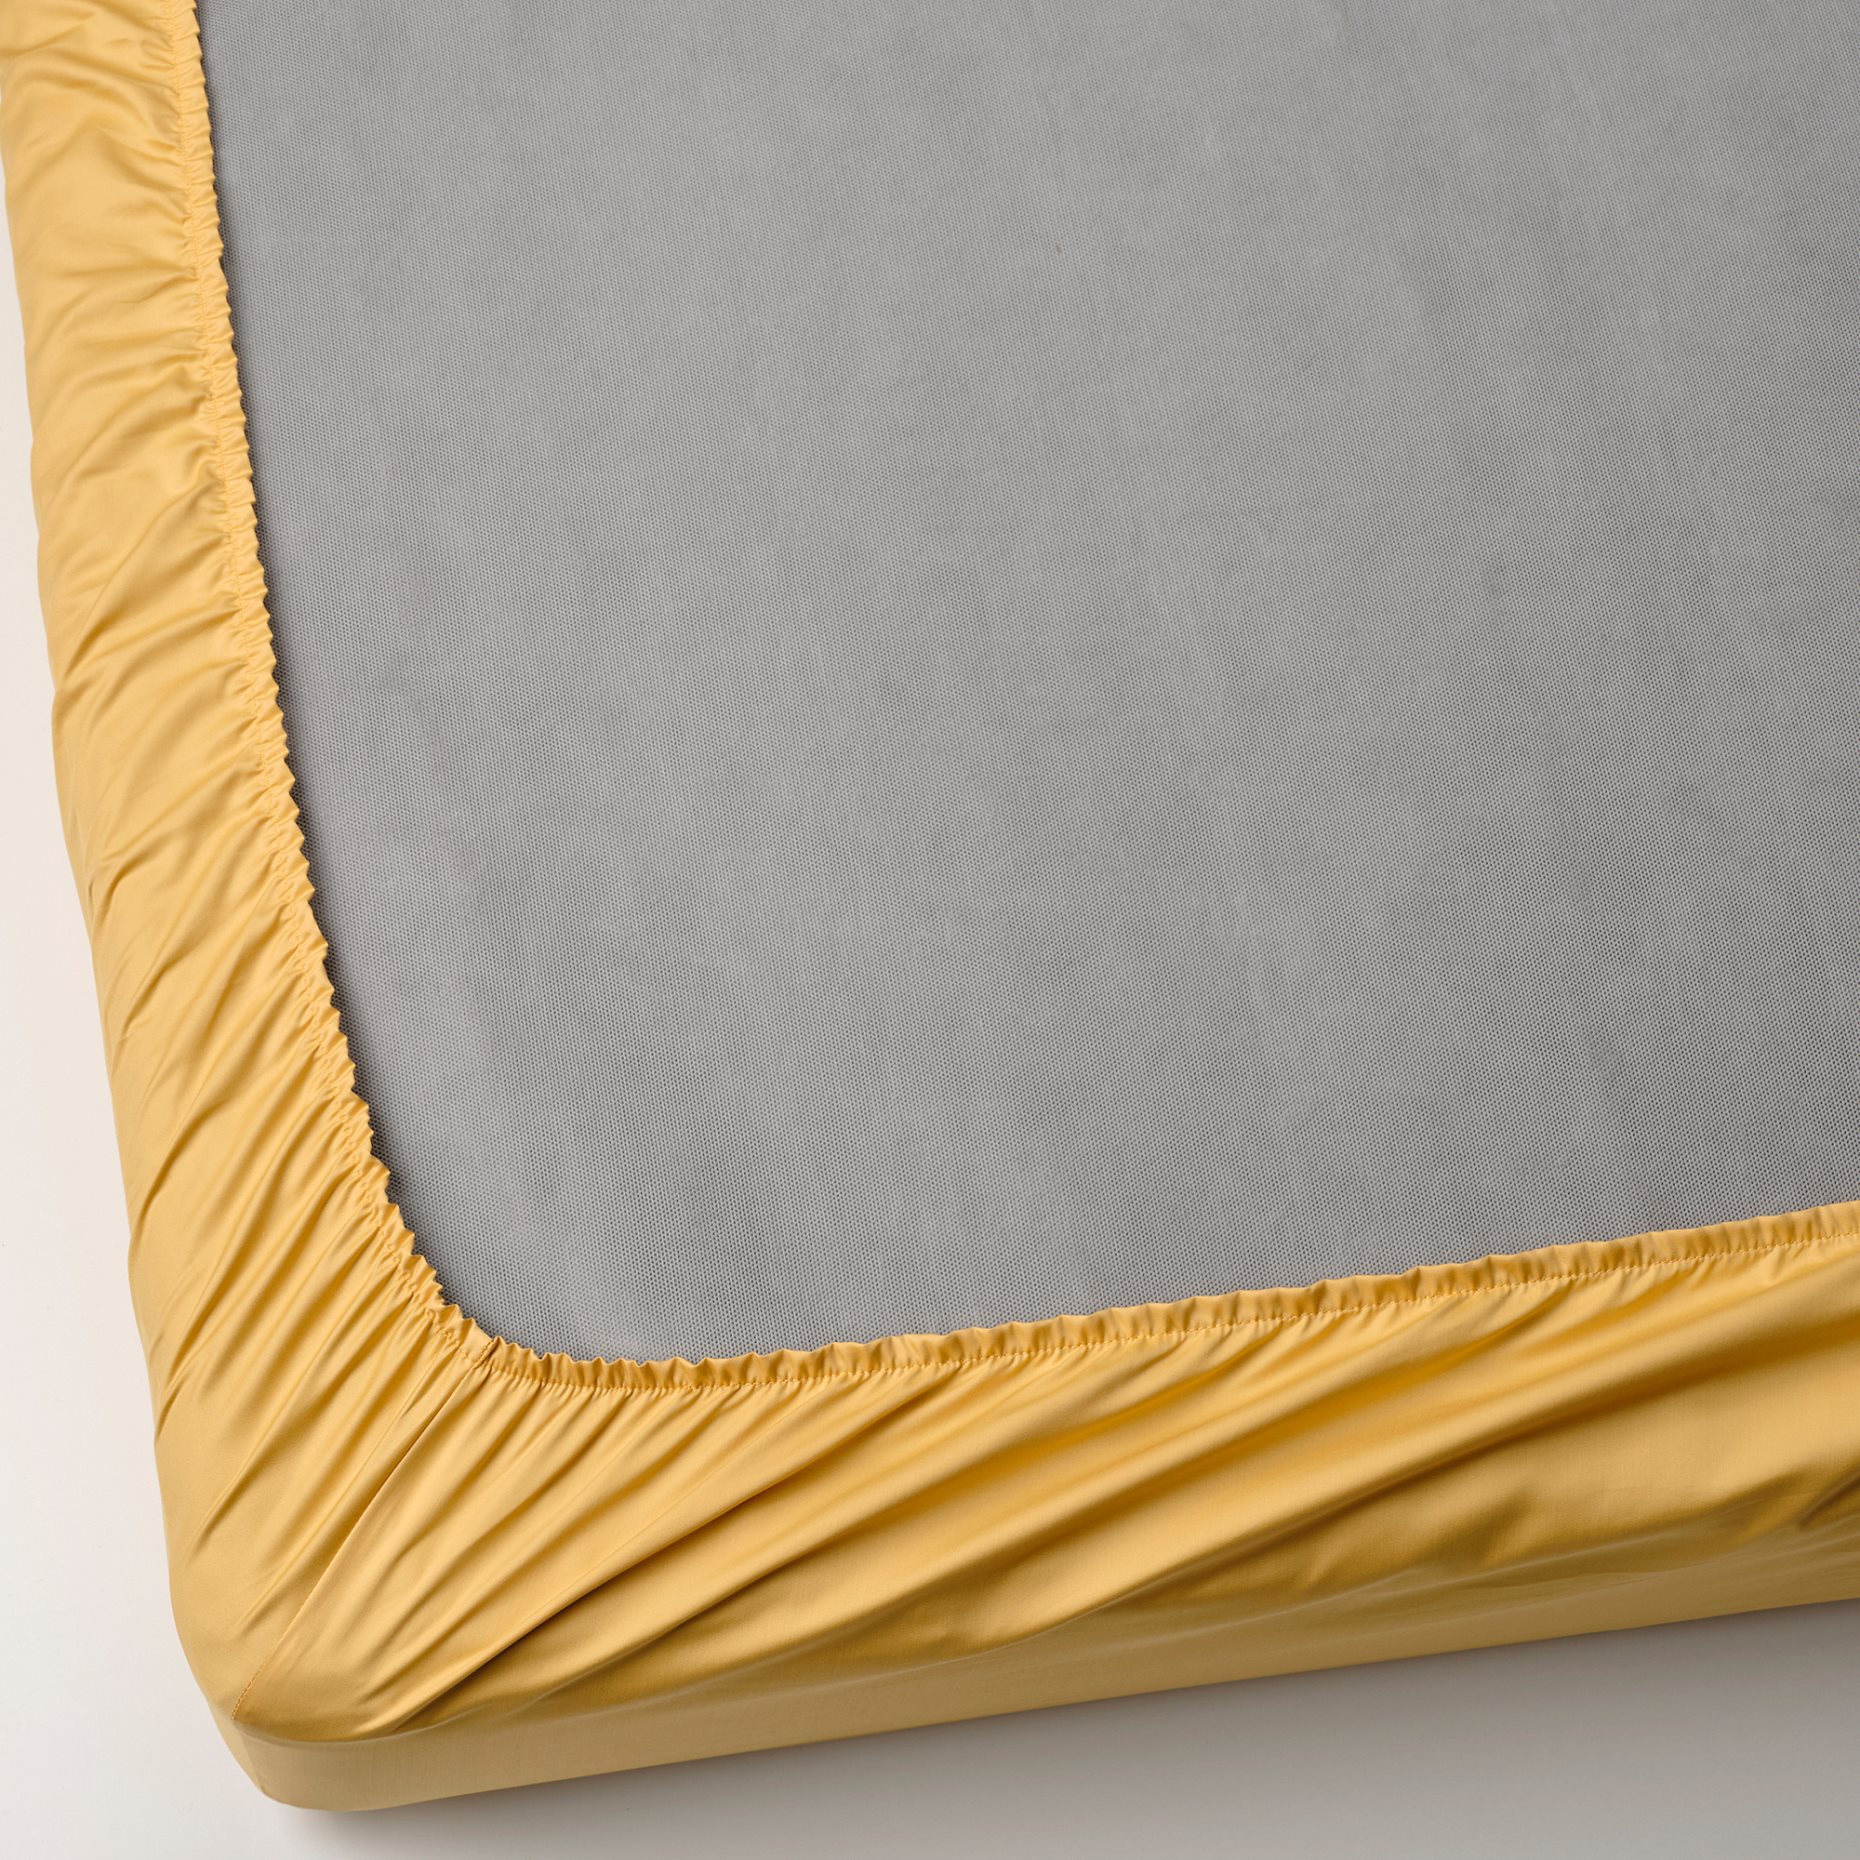 NATTJASMIN, σεντόνι με λάστιχο, 180x200 cm, 705.434.33